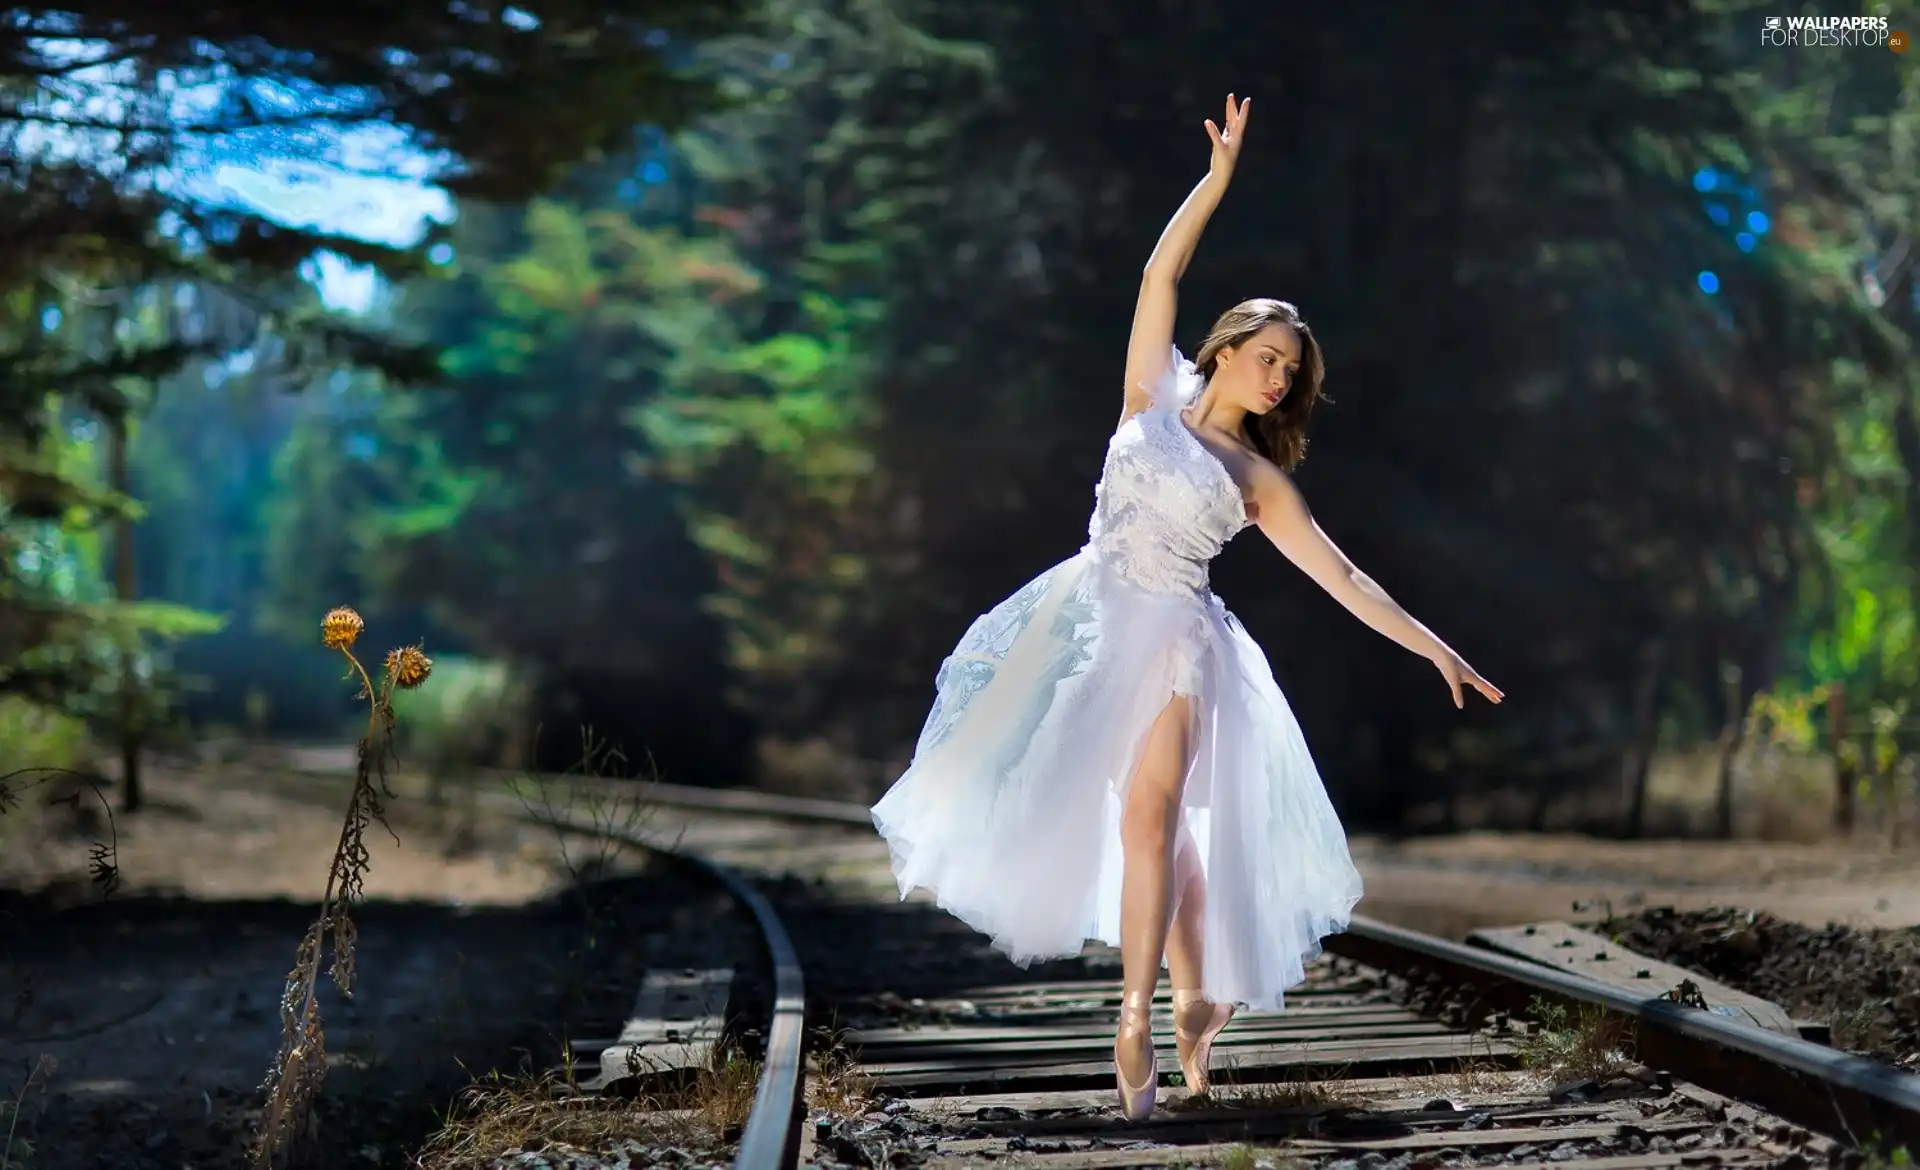 Railroad Tracks, girl, Ballet